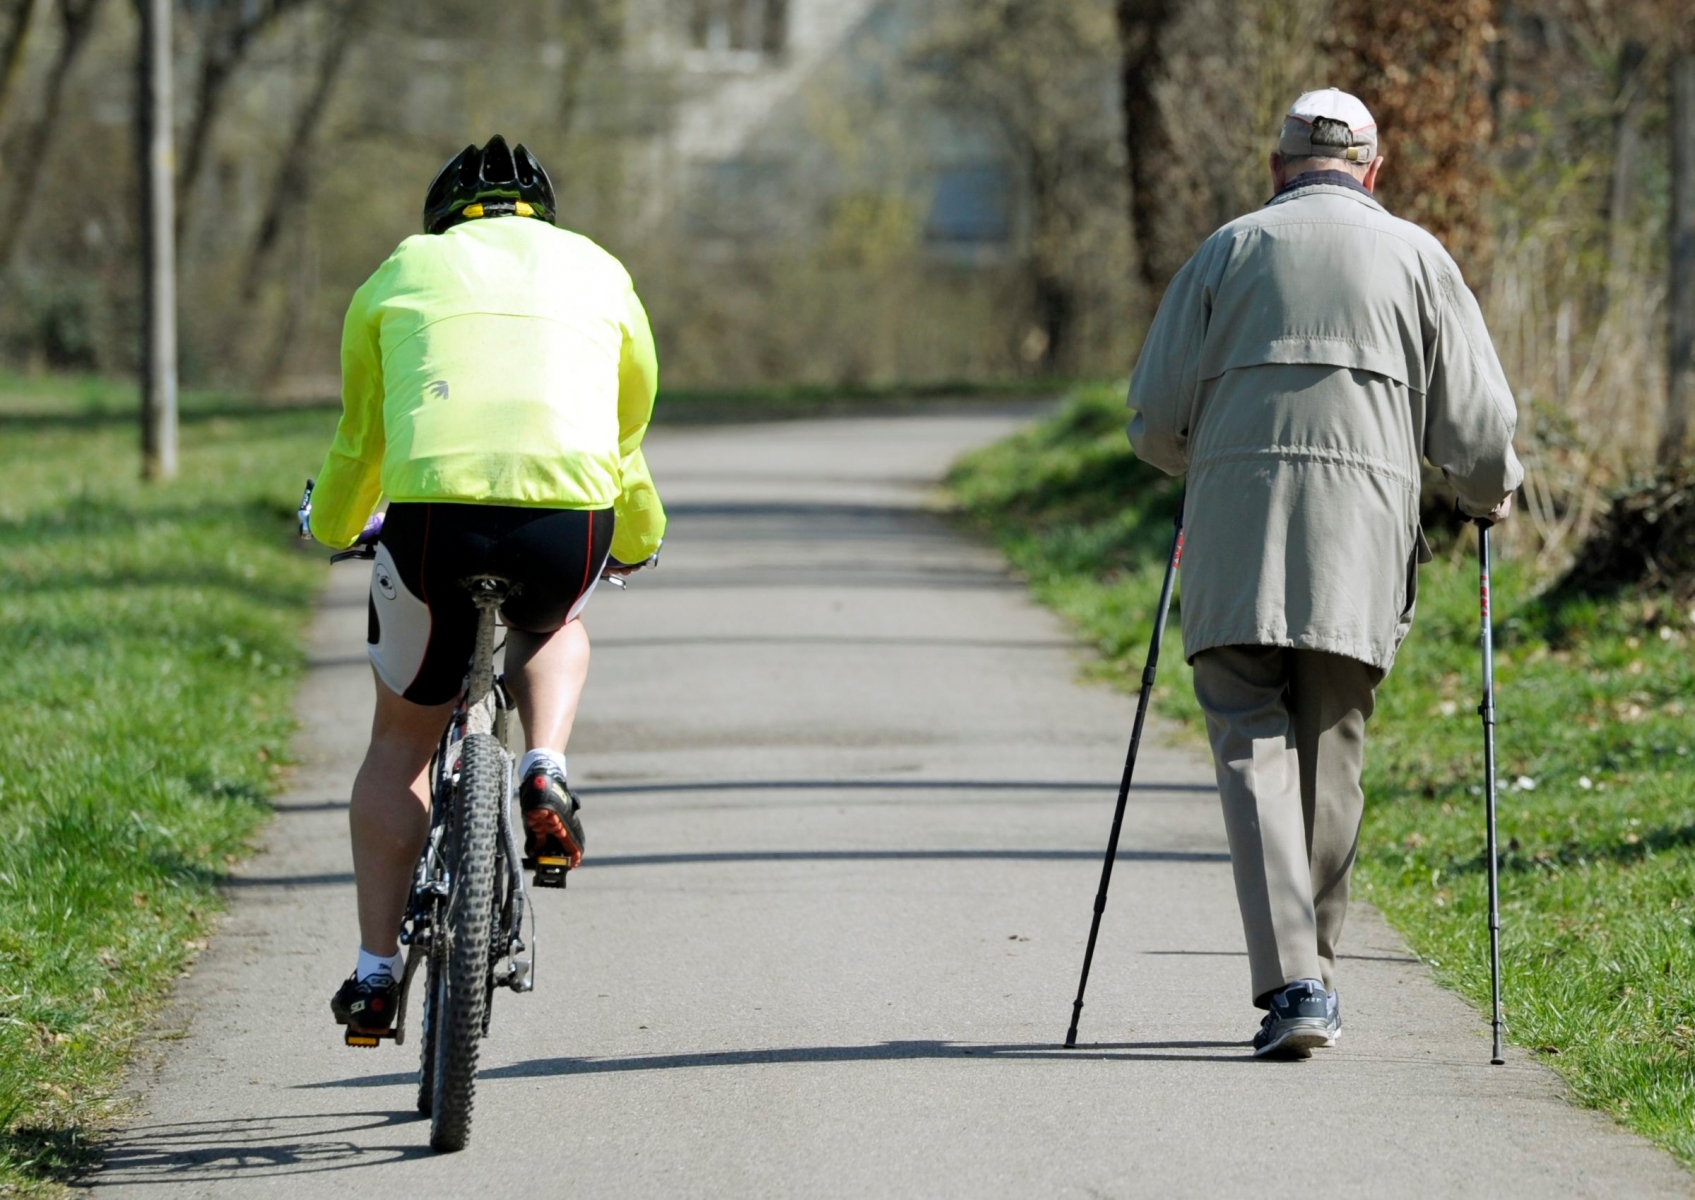 Les personnes âgées qui pratiquent une activité physique, qu’elles soient fragiles ou non, perdent moins de mobilité.